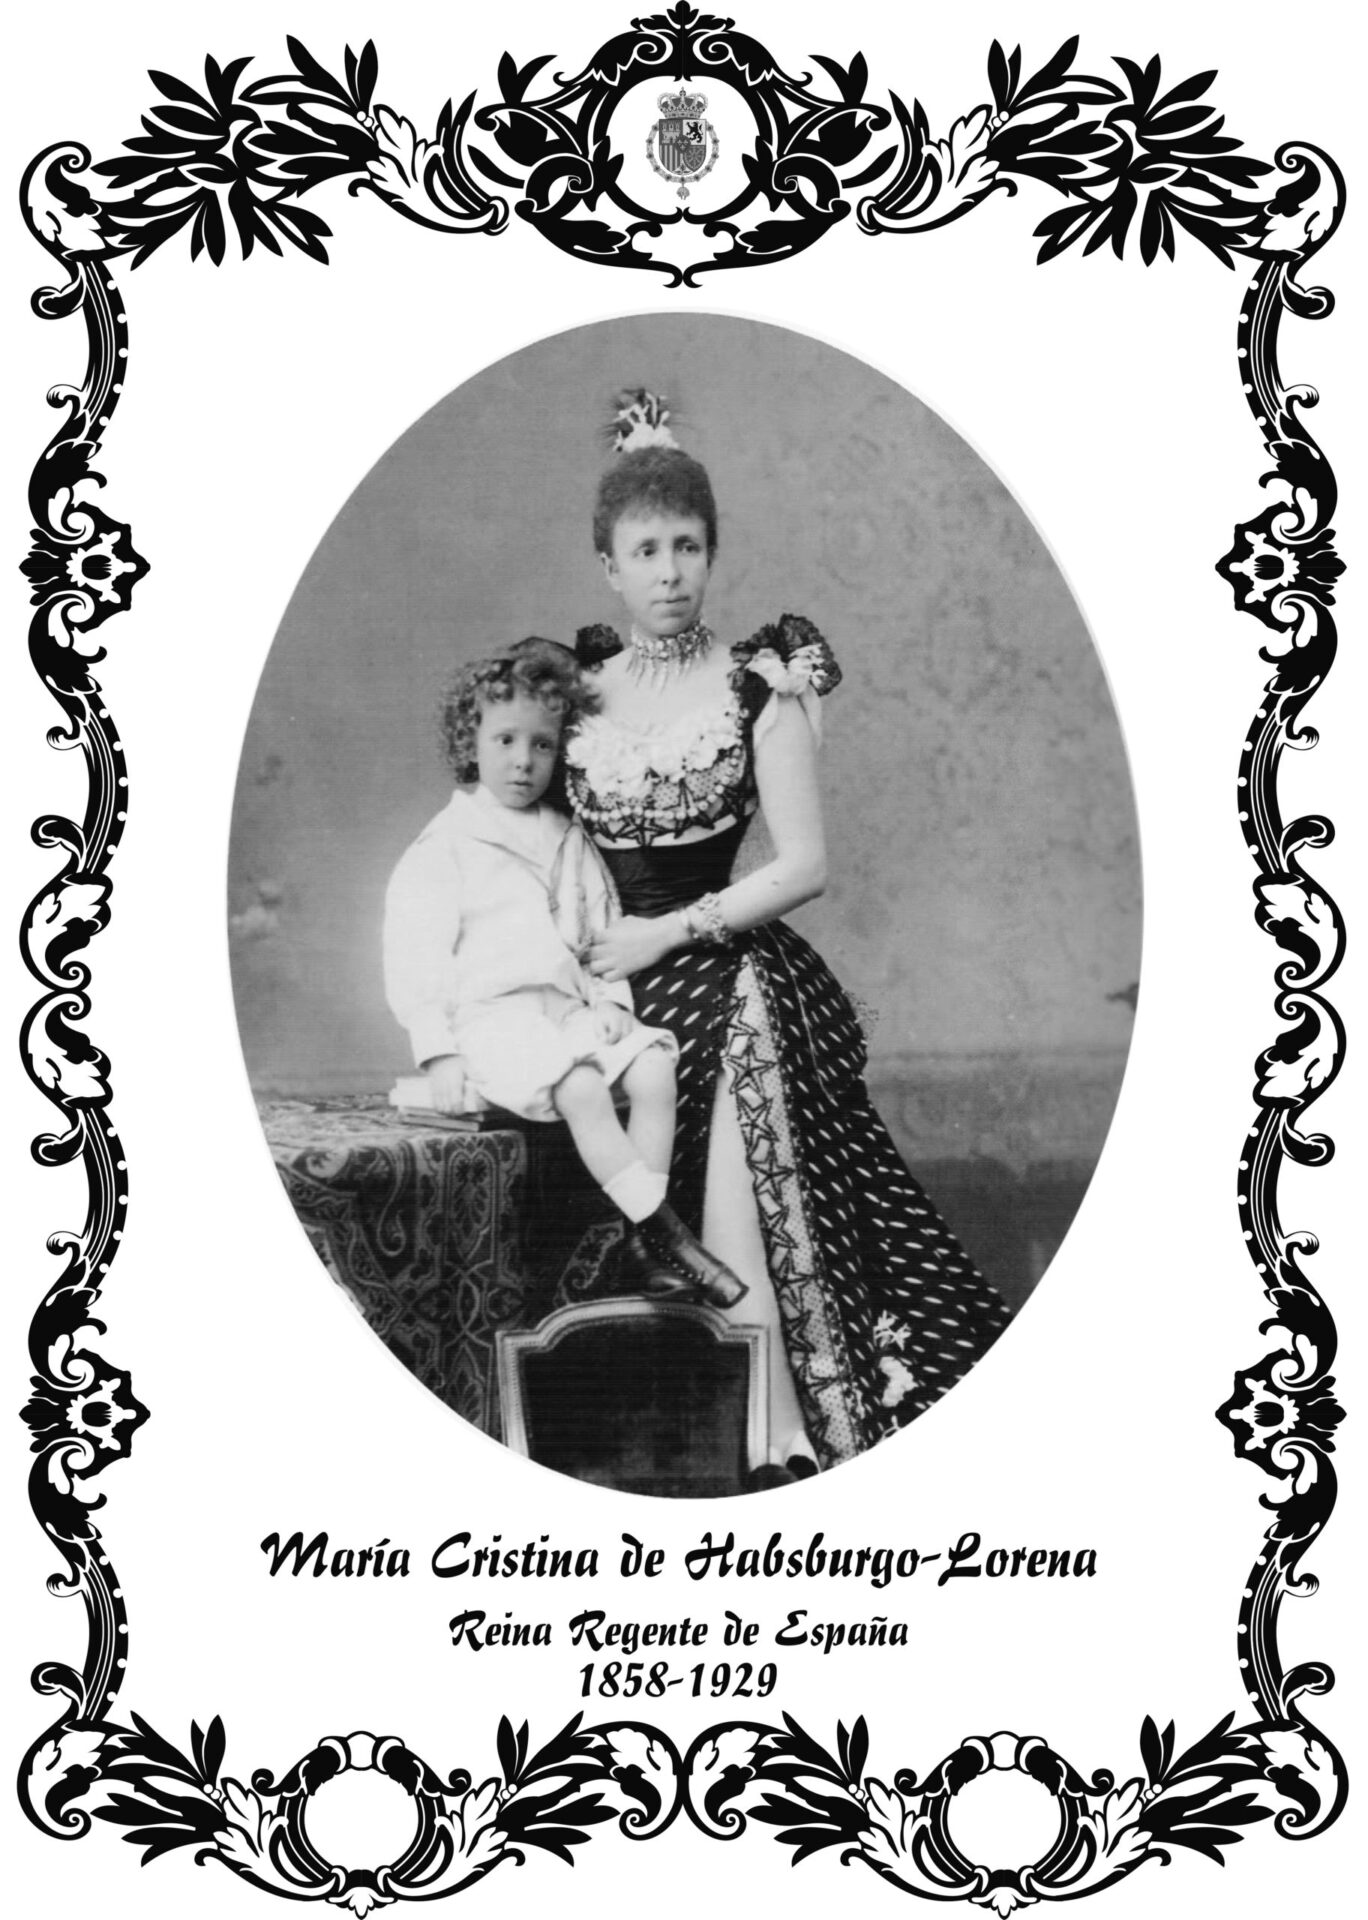 María Cristina de Habsburgo-Lorena o María Cristina de Austria